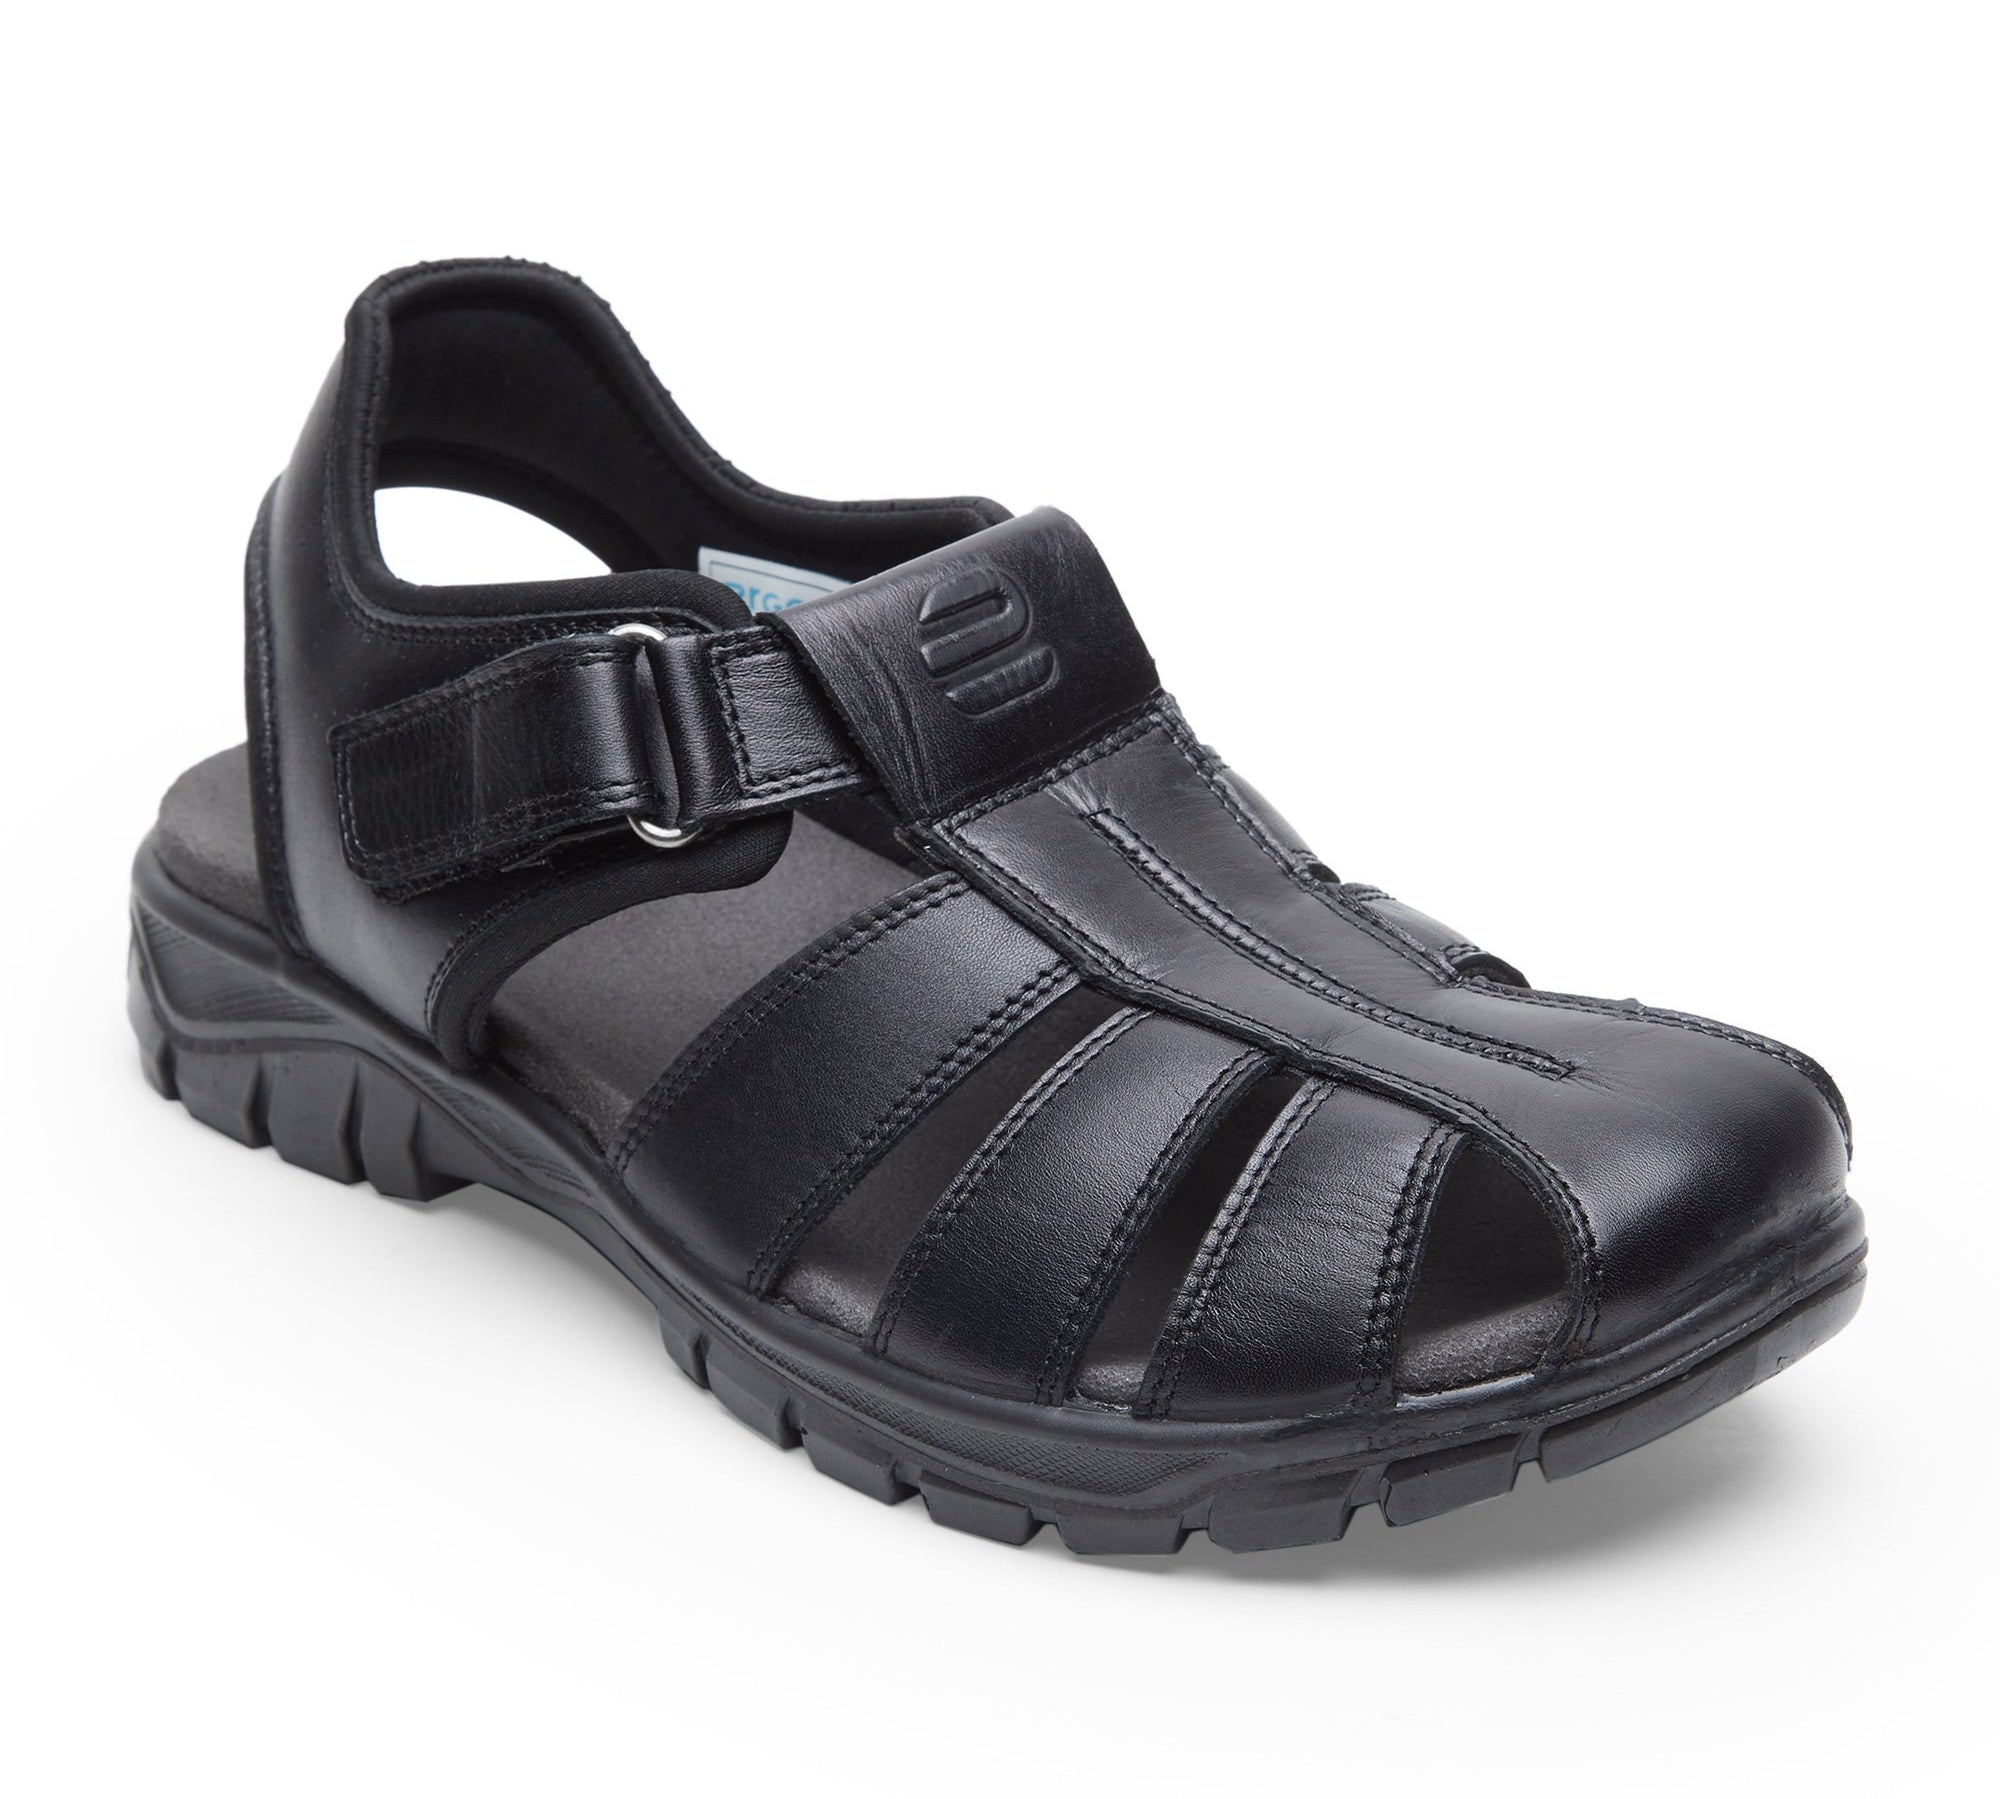 Sandals & Slippers for Men